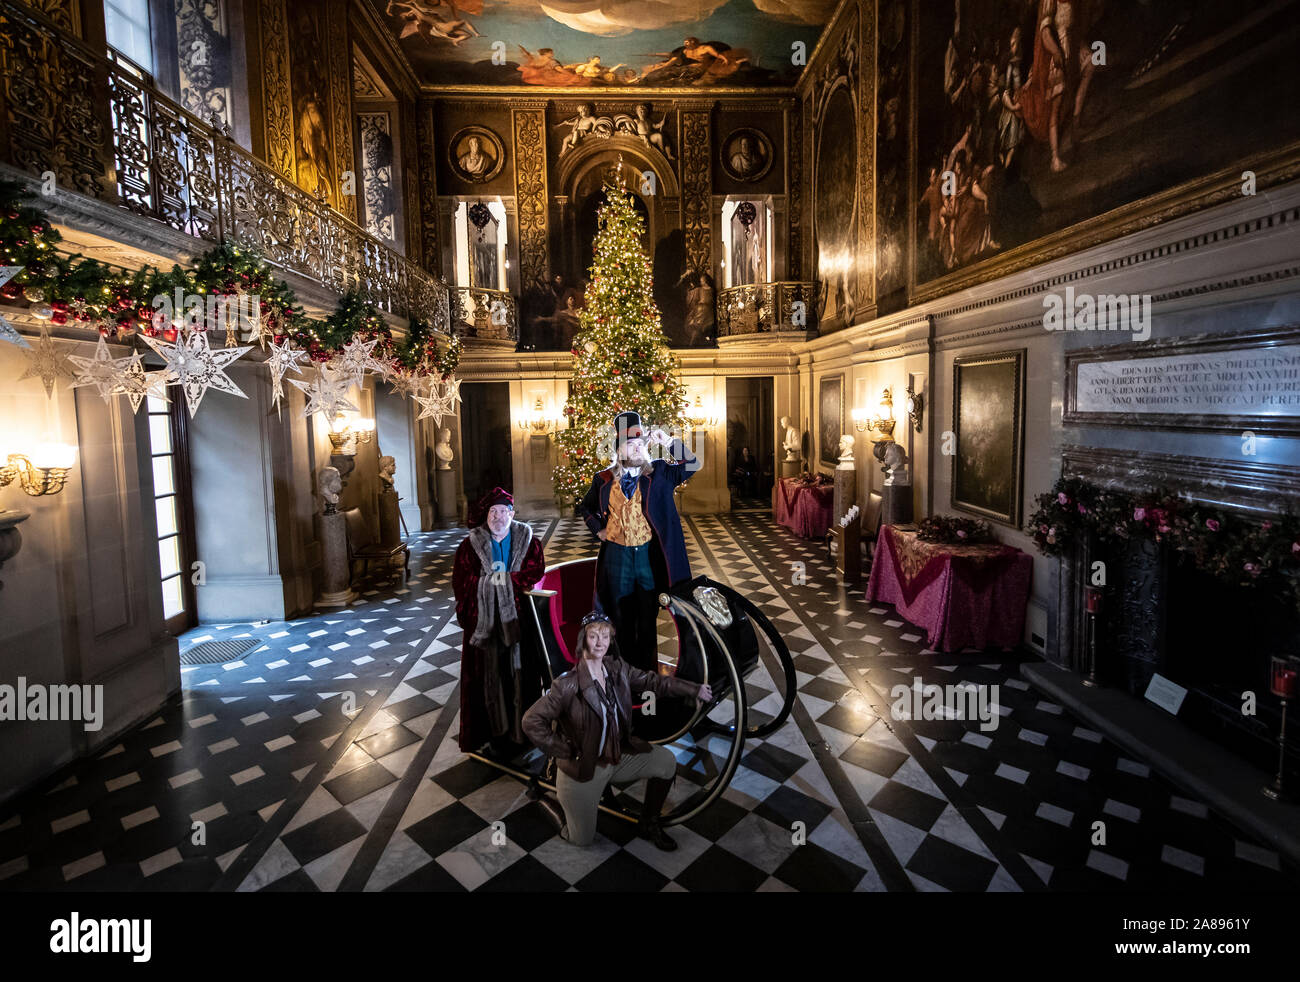 Ben Gilbert vestida como Phileas Fogg, Steve Dolton como Marco Polo y Jill Myers como Amelia Earhart, durante el lanzamiento de una tierra muy muy lejos, parte de la Navidad celebraitions en Chatsworth House, cerca de Bakewell. Foto de stock